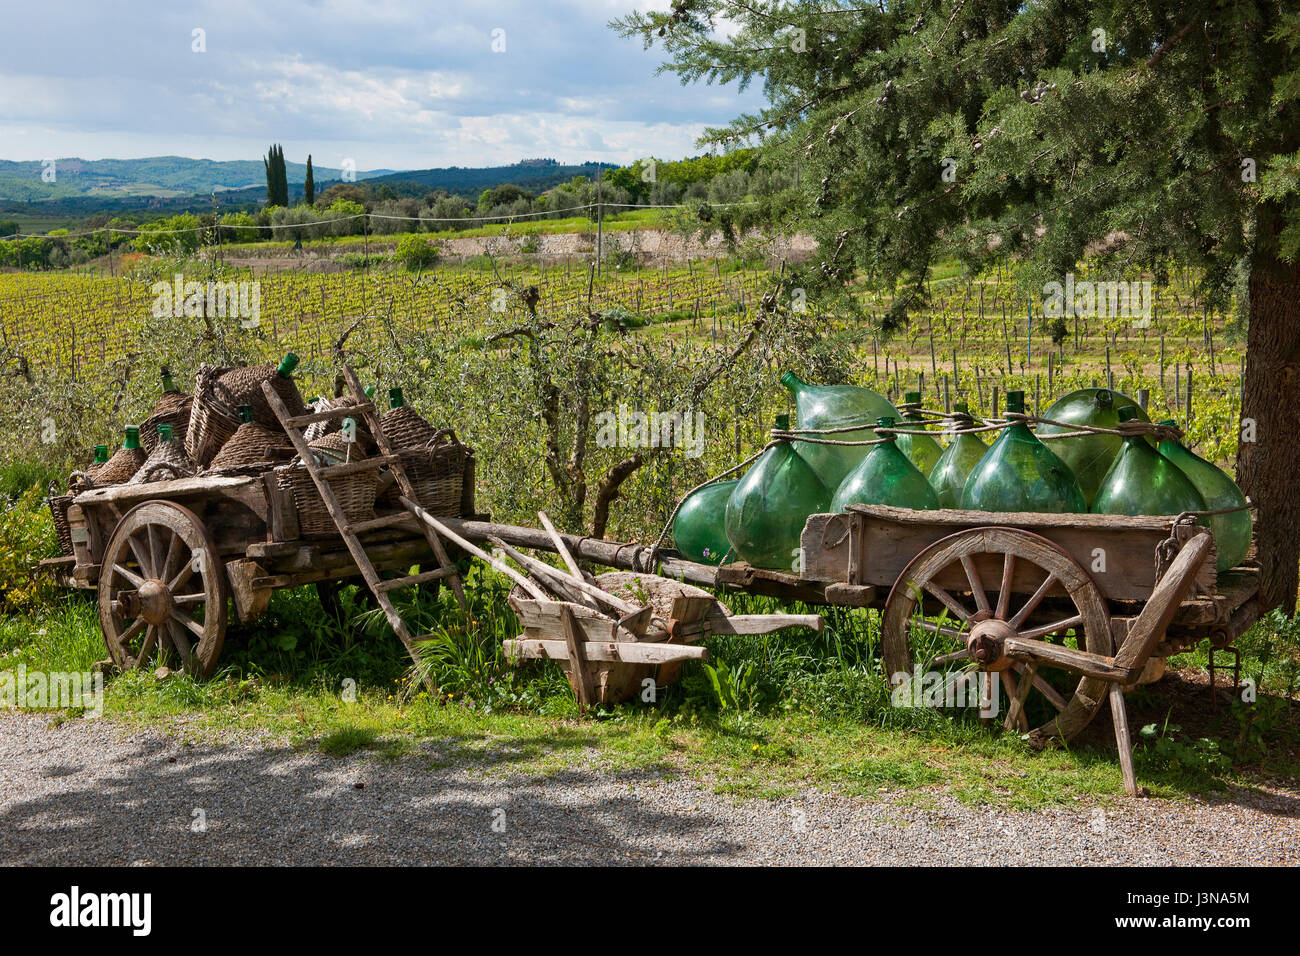 Panier en bois avec des bouteilles de vin, la Villa a Sesta, Chianti, Toscane, Italie, Europe Banque D'Images